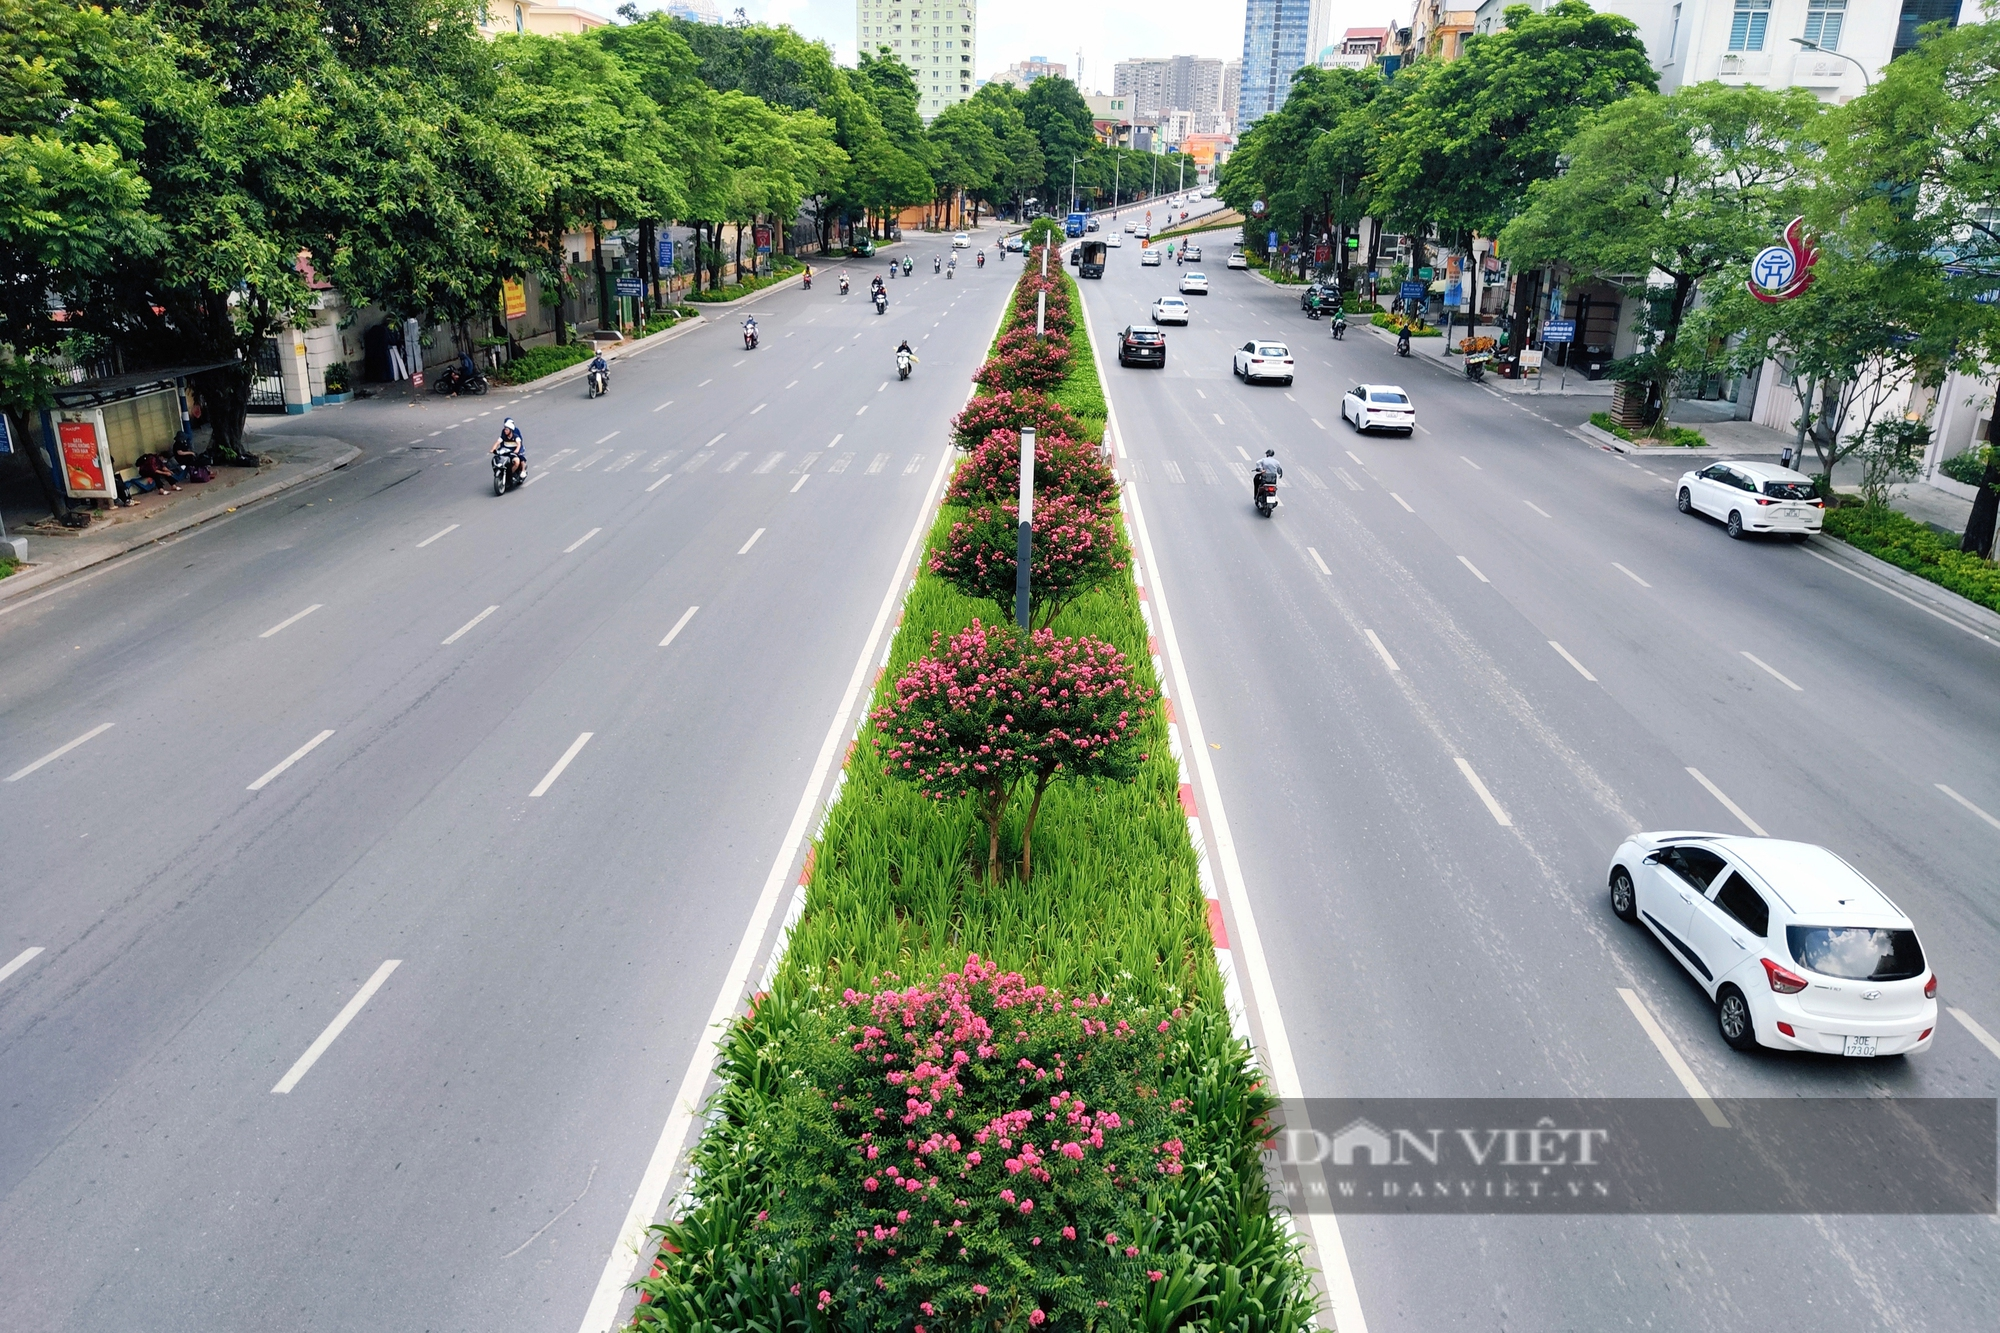 Hàng phong lá đỏ chết khô bị nhổ bỏ, hoa tương vi phủ sắc hồng trên đường Nguyễn Chí Thanh - Ảnh 1.